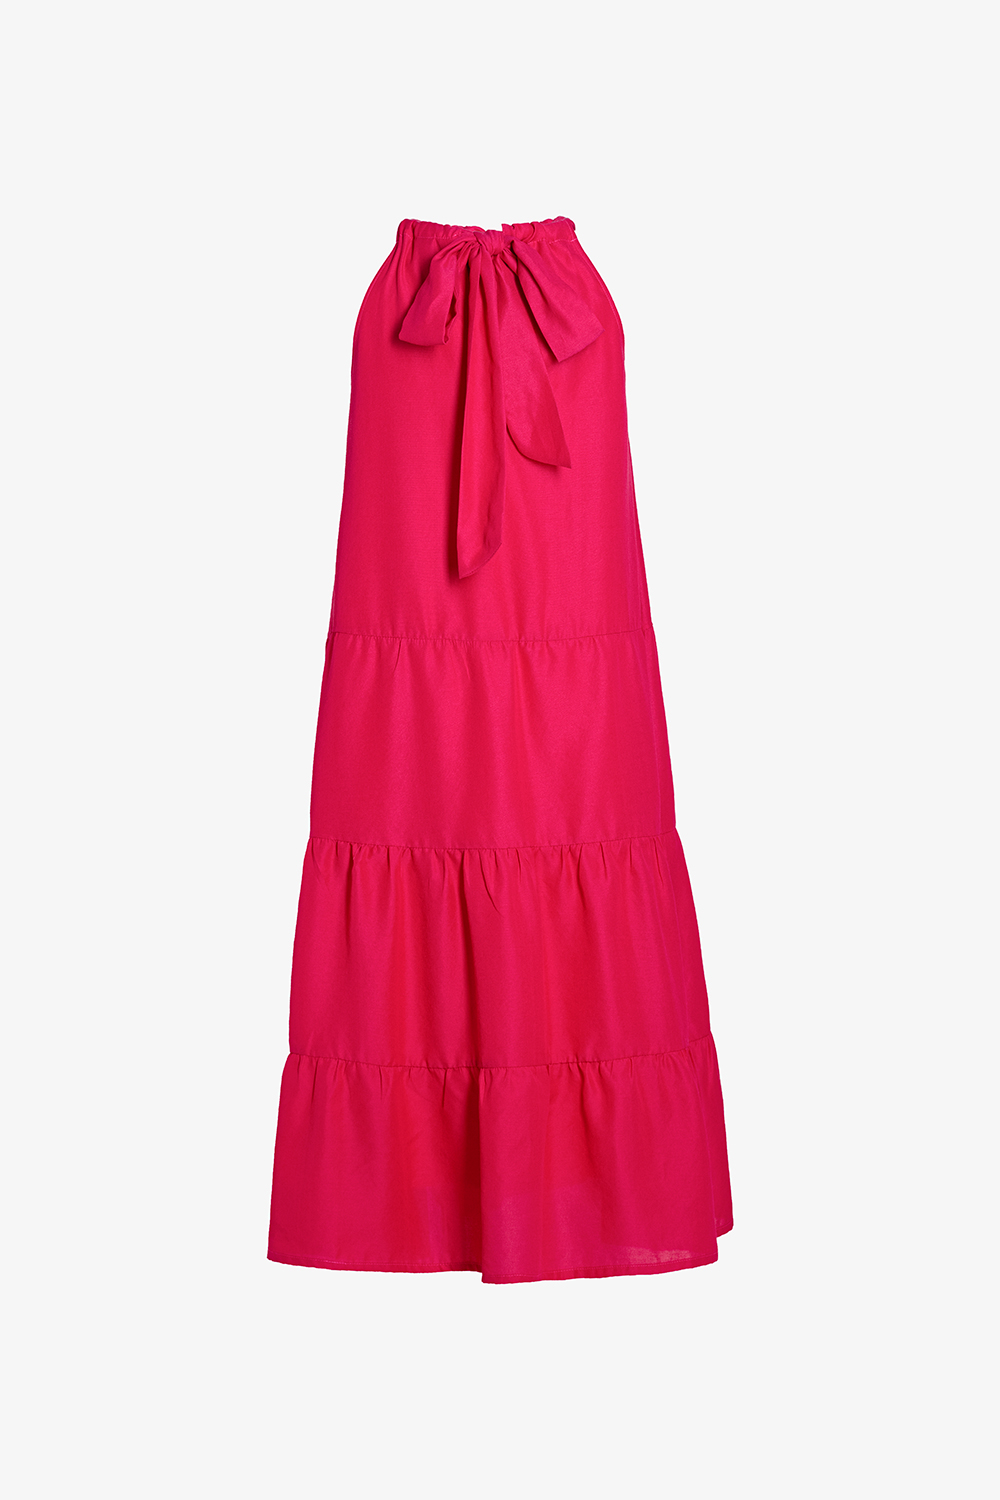 Đầm dự tiệc thiết kế dáng suông trắng, đỏ, đen sang trọng Berry bigsize váy  đầm nữ đẹp đi biển giá rẻ - Đầm suông | ThờiTrangNữ.vn